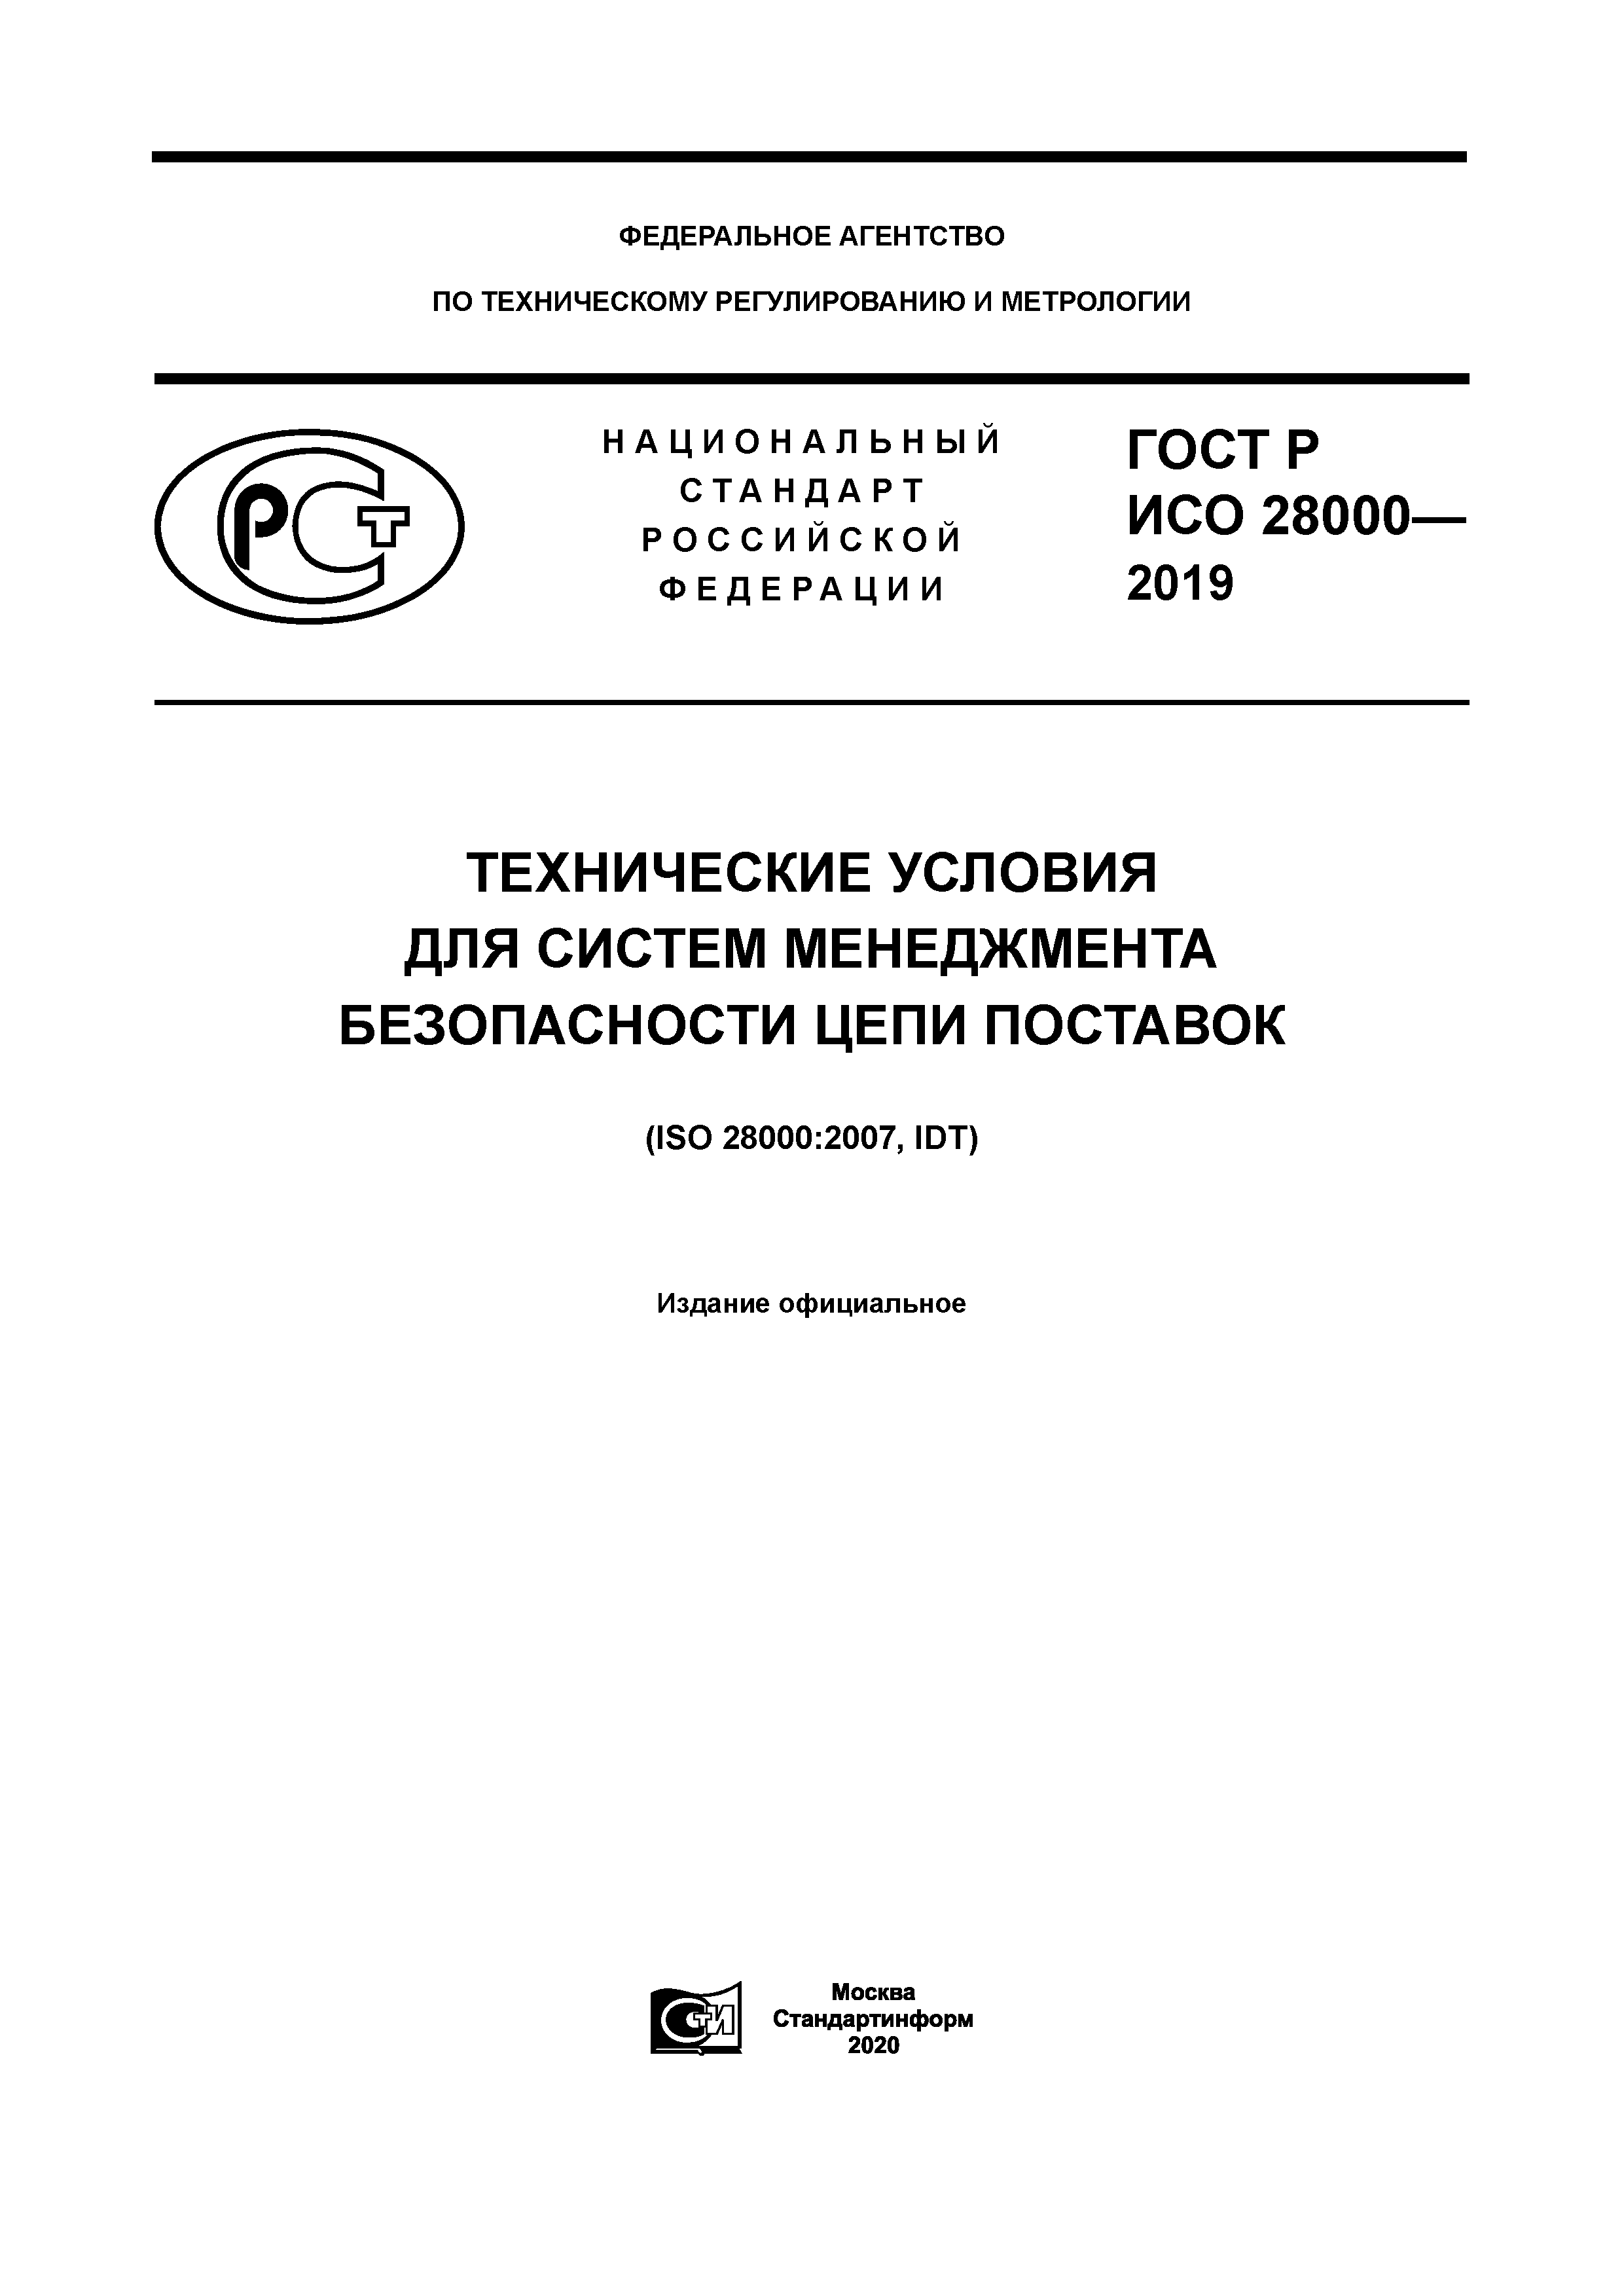 ГОСТ Р ИСО 28000-2019